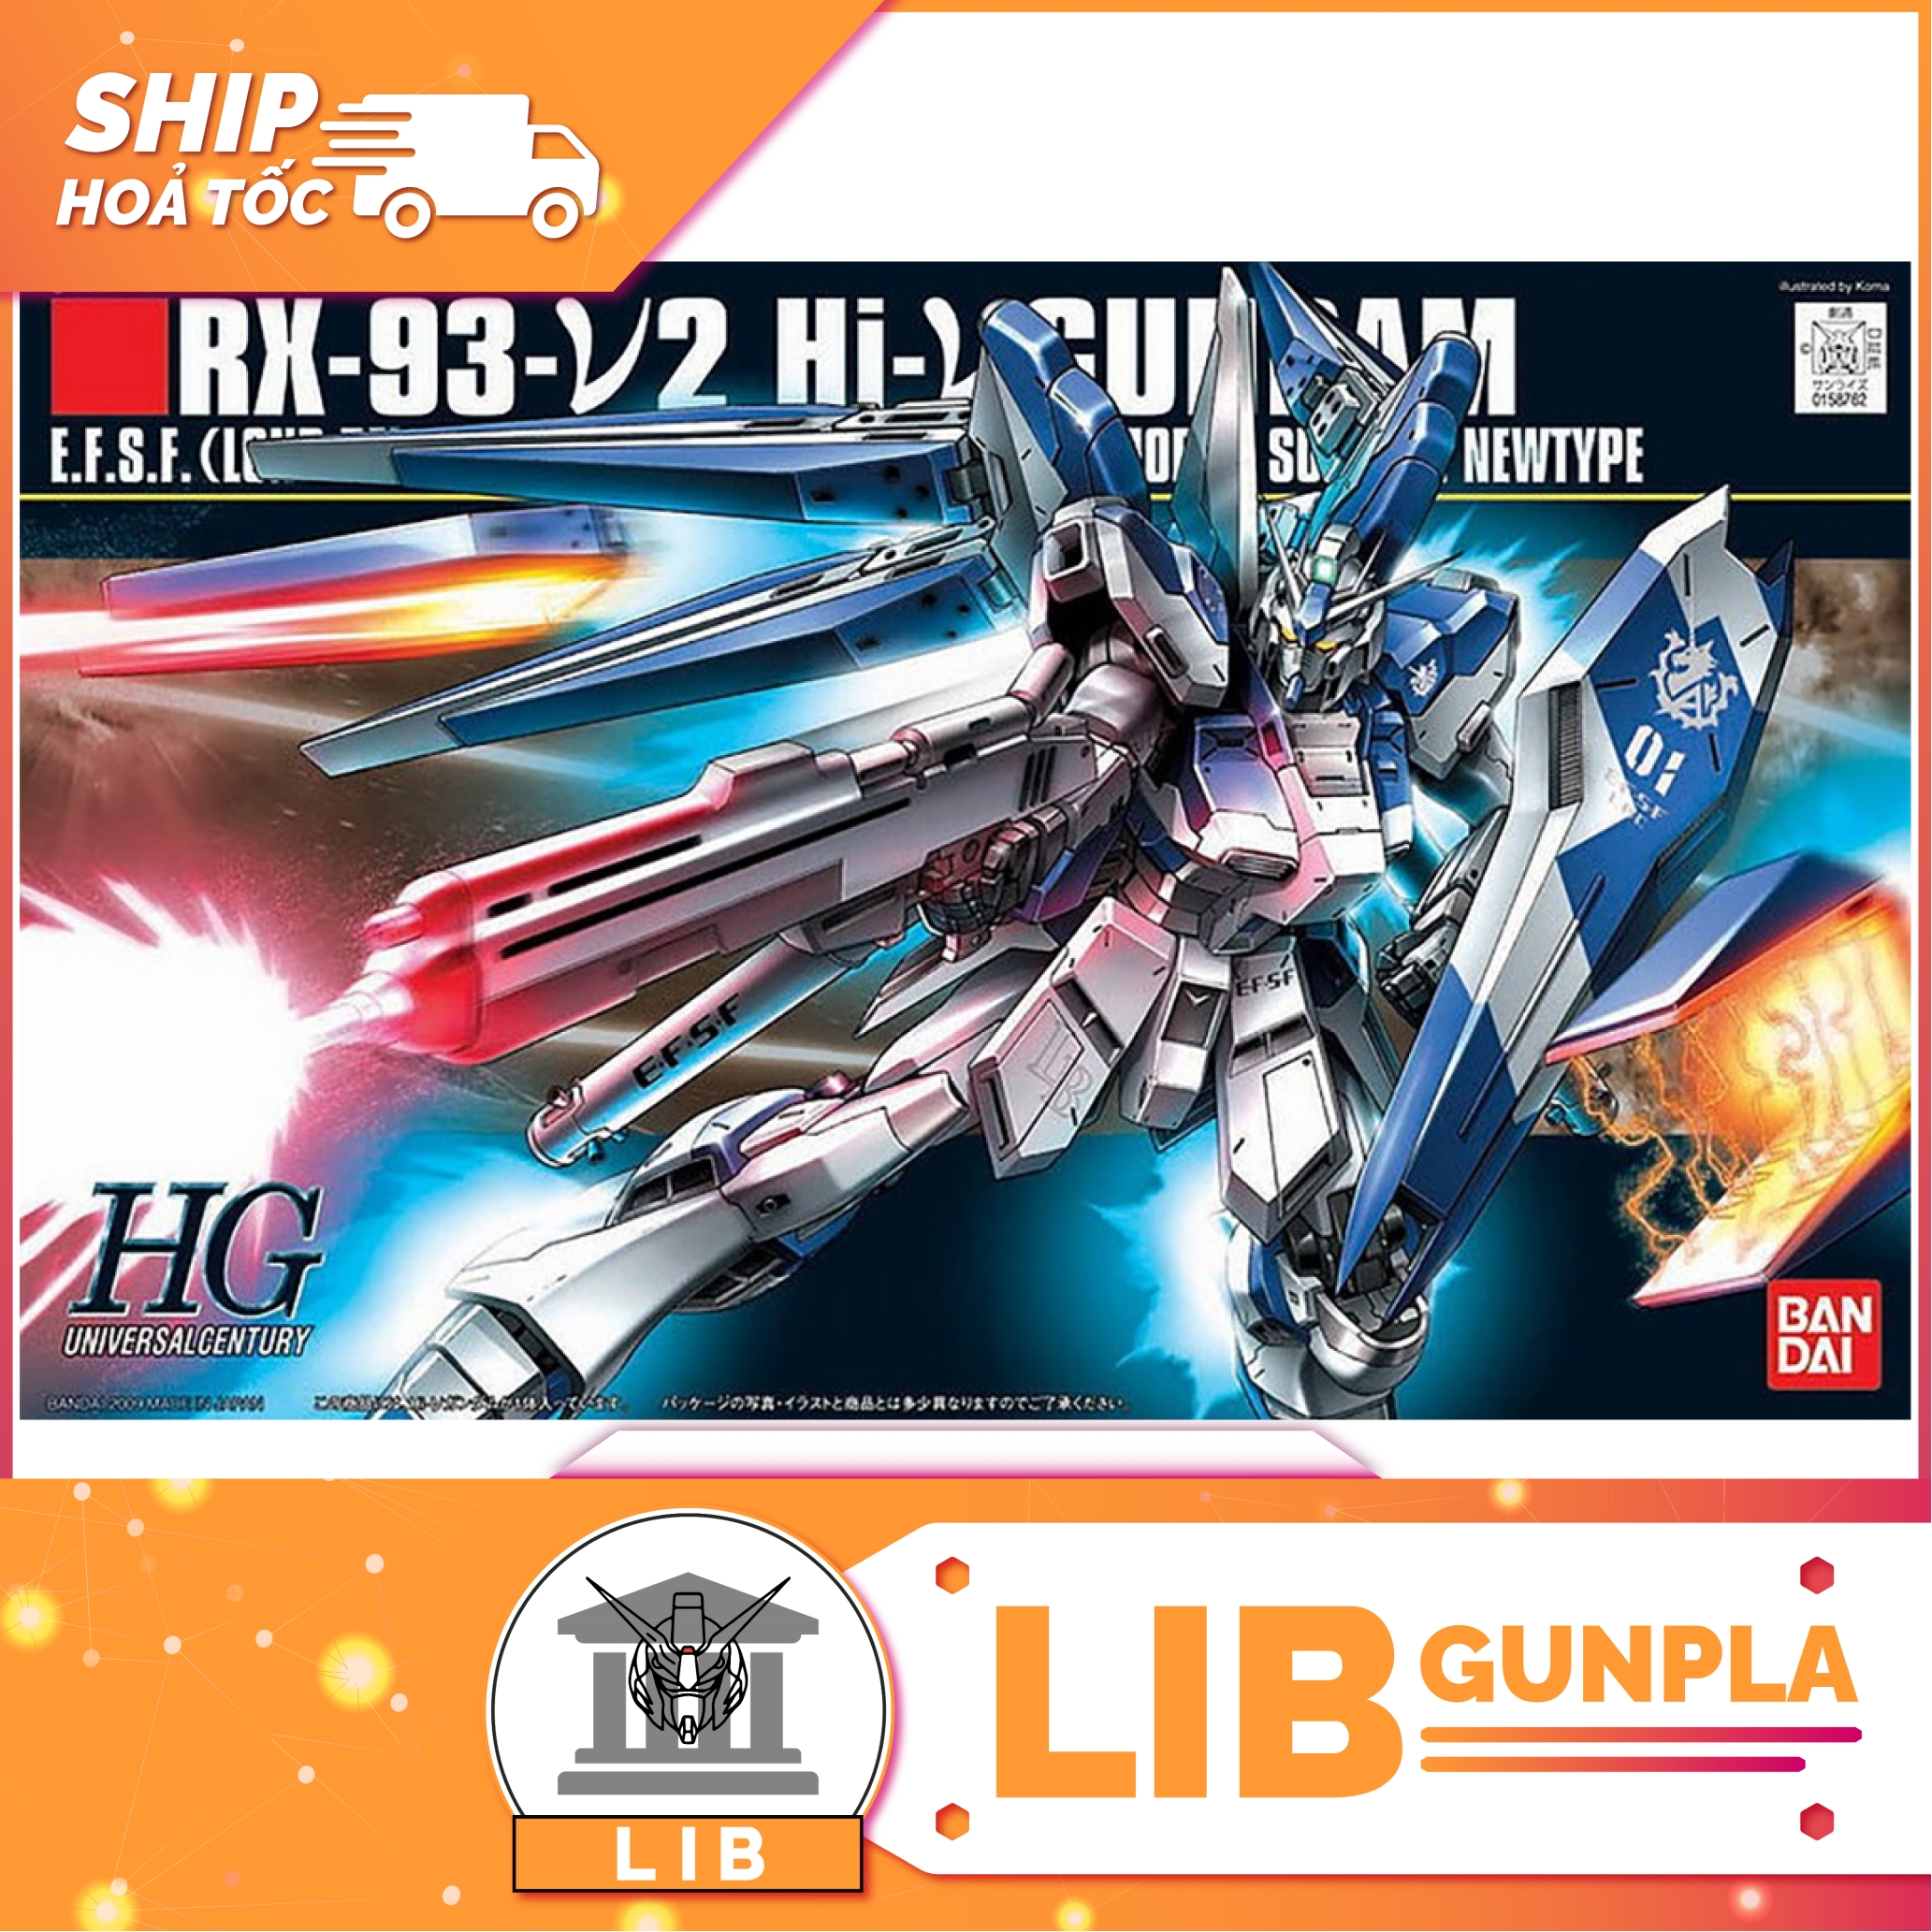 Model assembled Bandai Gundam HG UC Hi nu Gundam